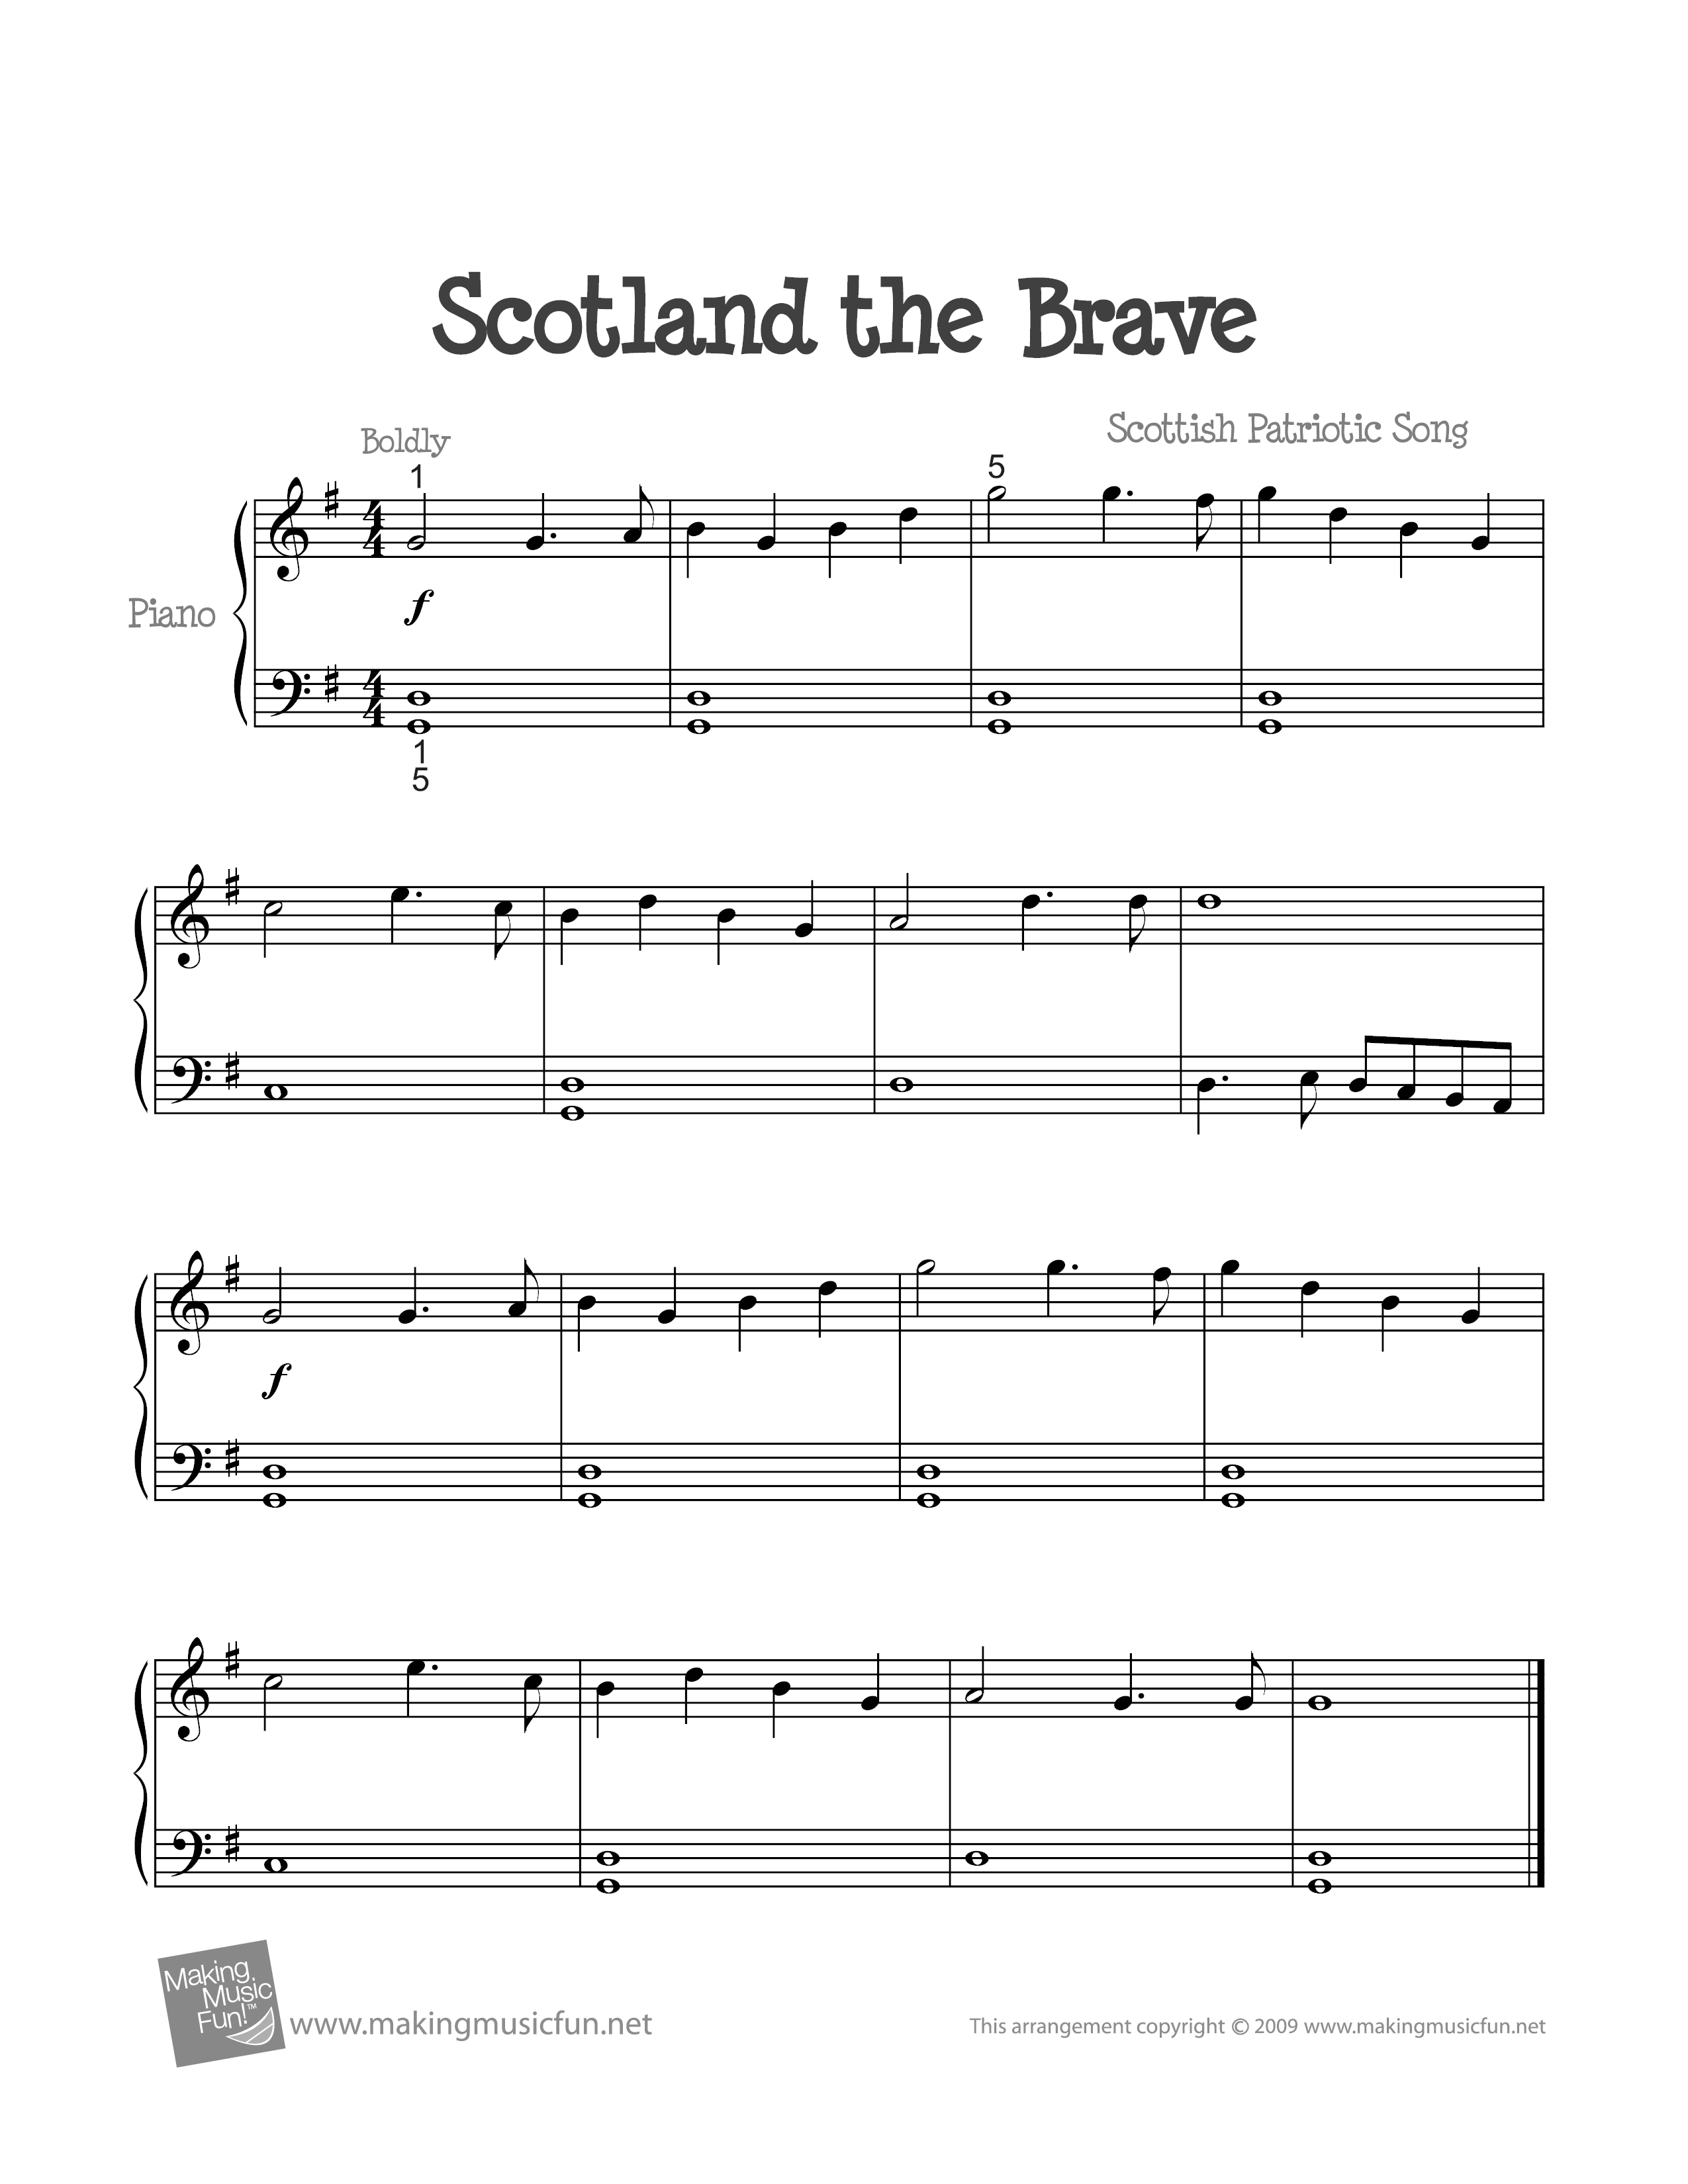 Scotland the Braveピアノ譜